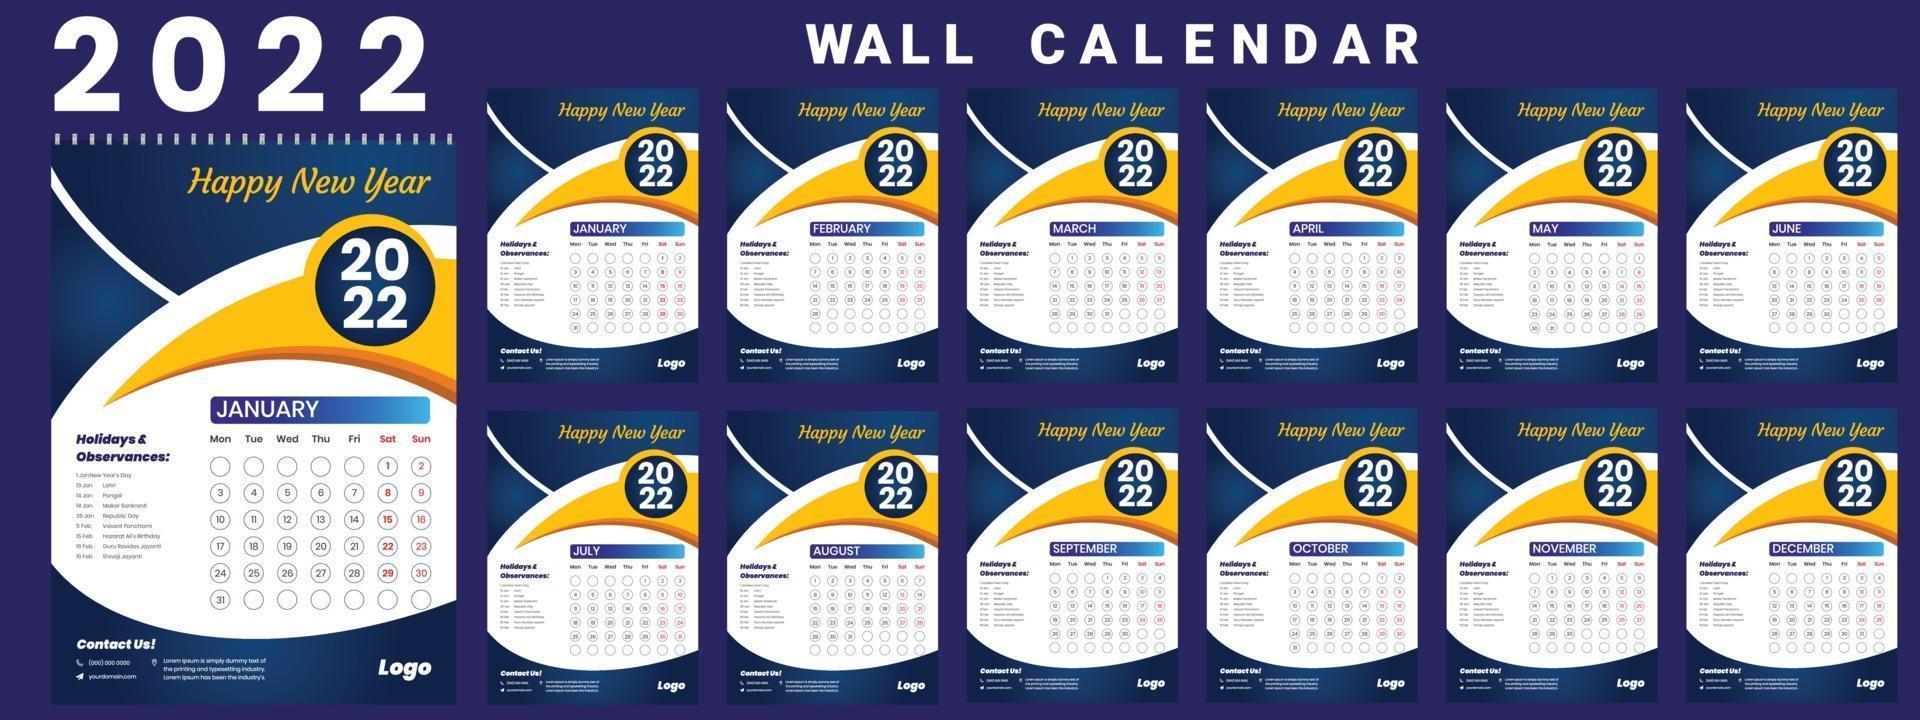 Ua Calendar 2022 Wall Calendar 2022 Week Start Monday Corporate Design Template Vector  3042946 Vector Art At Vecteezy